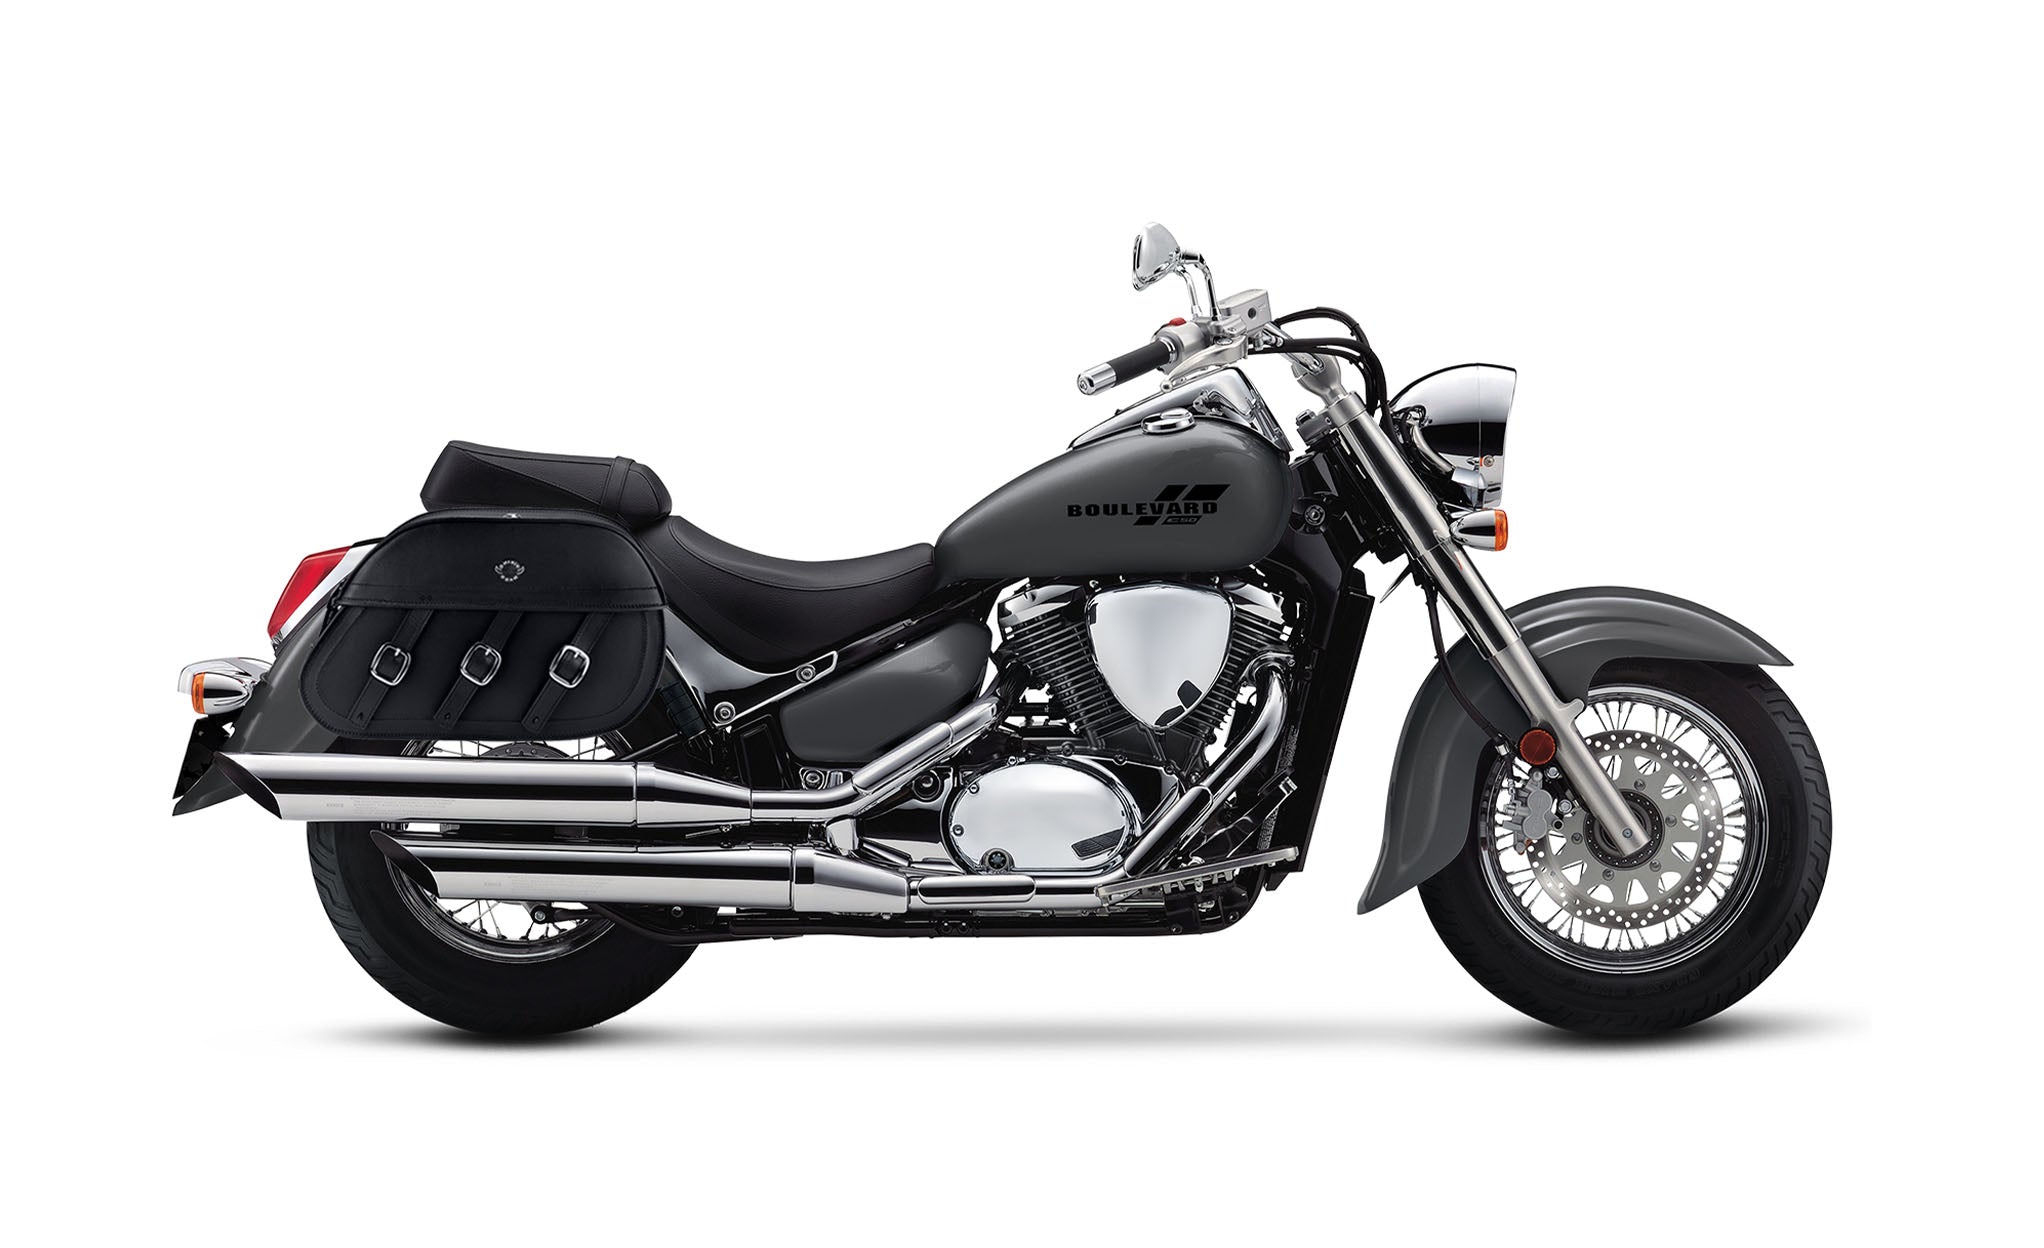 Viking Trianon Extra Large Suzuki Boulevard C50 Vl800 Leather Motorcycle Saddlebags on Bike Photo @expand